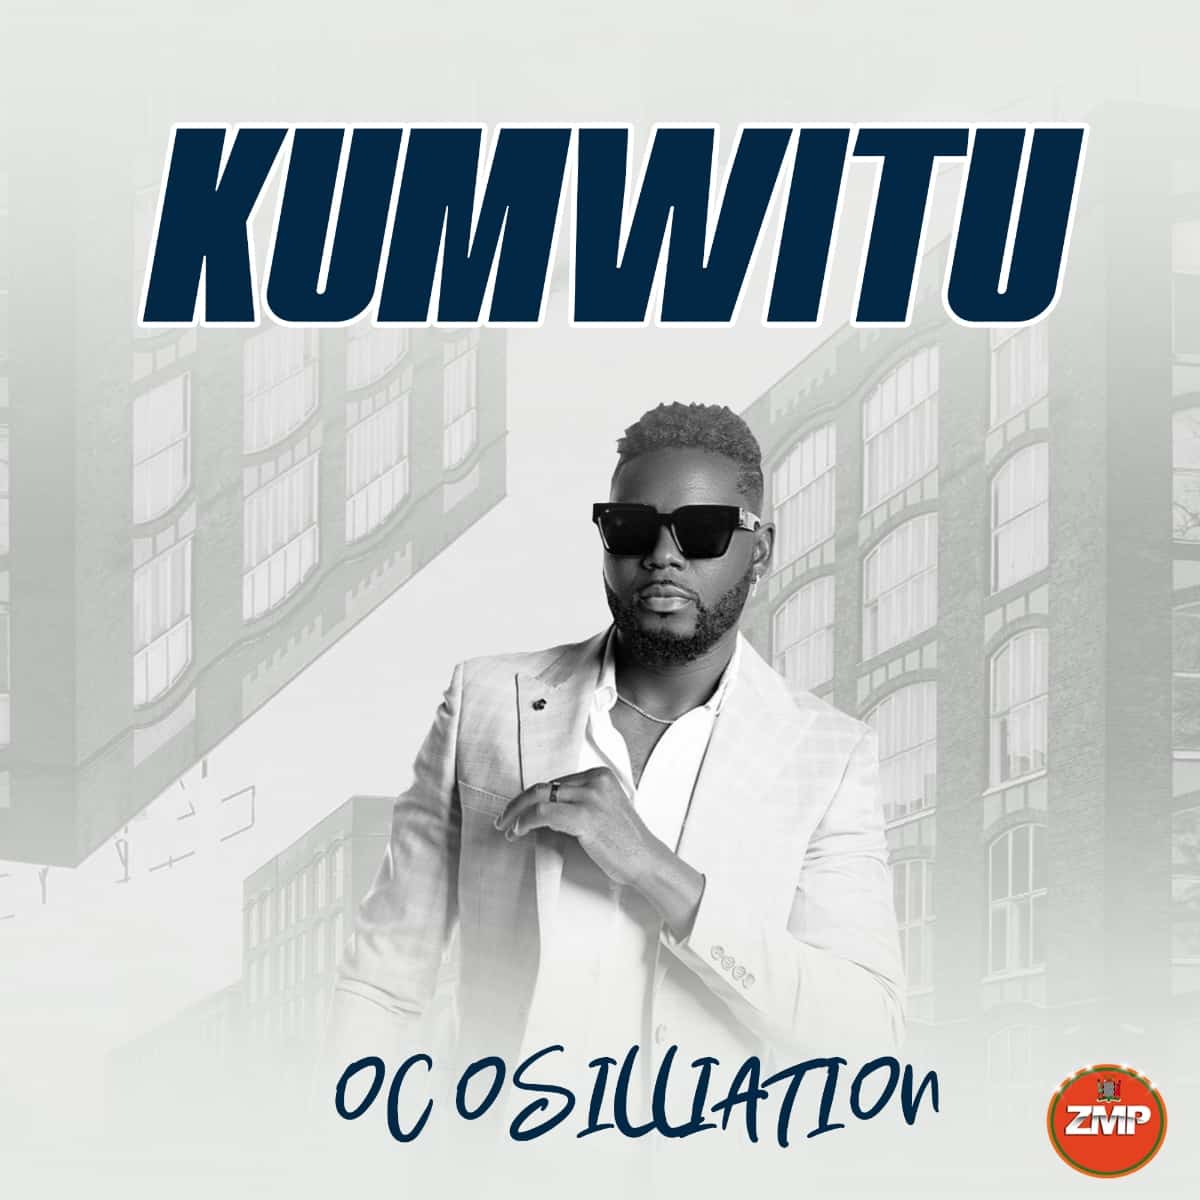 DOWNLOAD: Oc Osilliation – “Kumwitu” Mp3